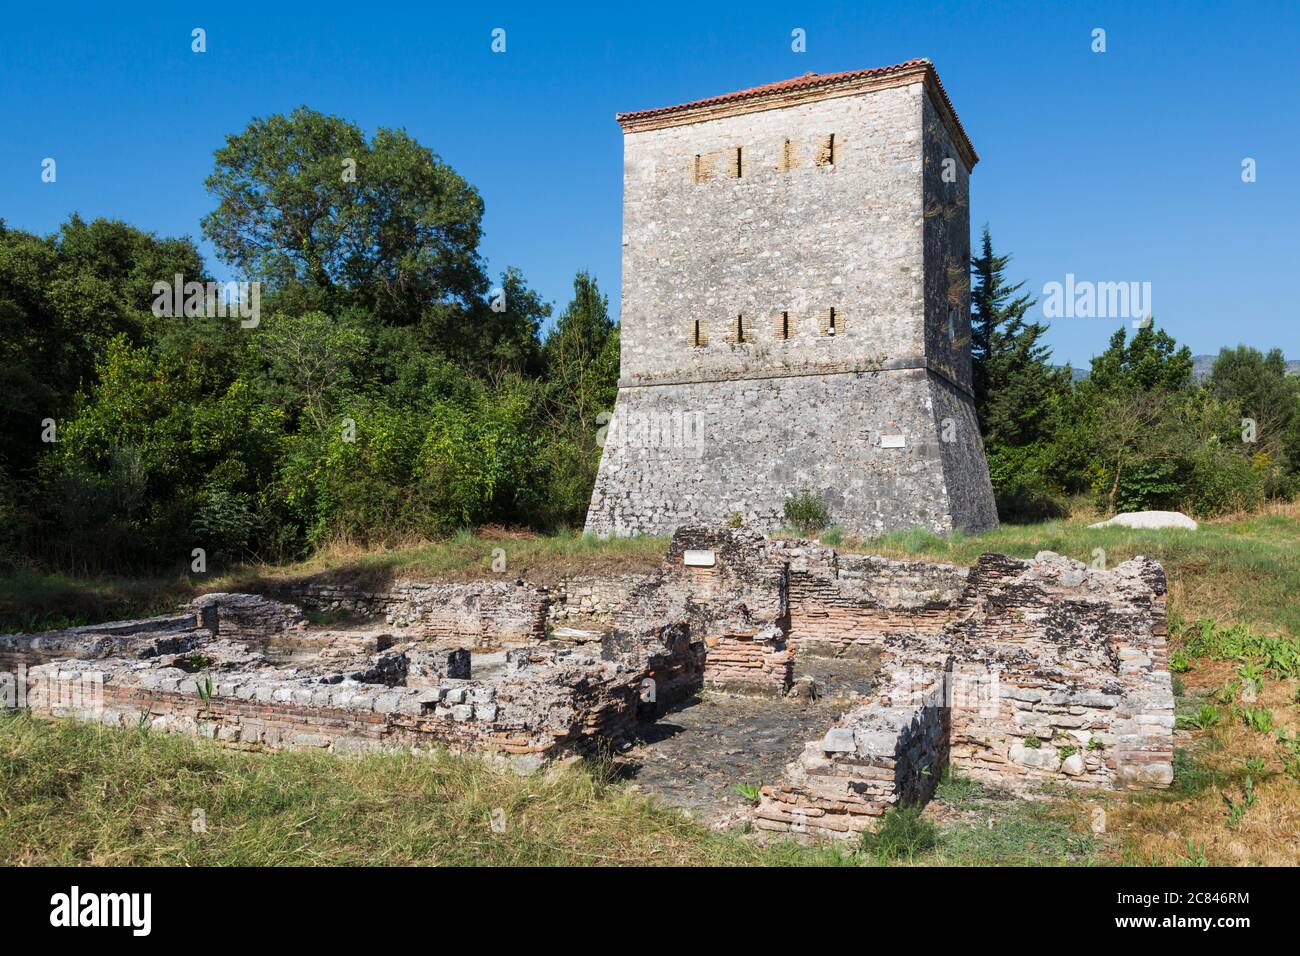 L'Albania. Butrinto o Buthrotum sito archeologico; un sito Patrimonio Mondiale dell'UNESCO. La torre veneziana. Foto Stock